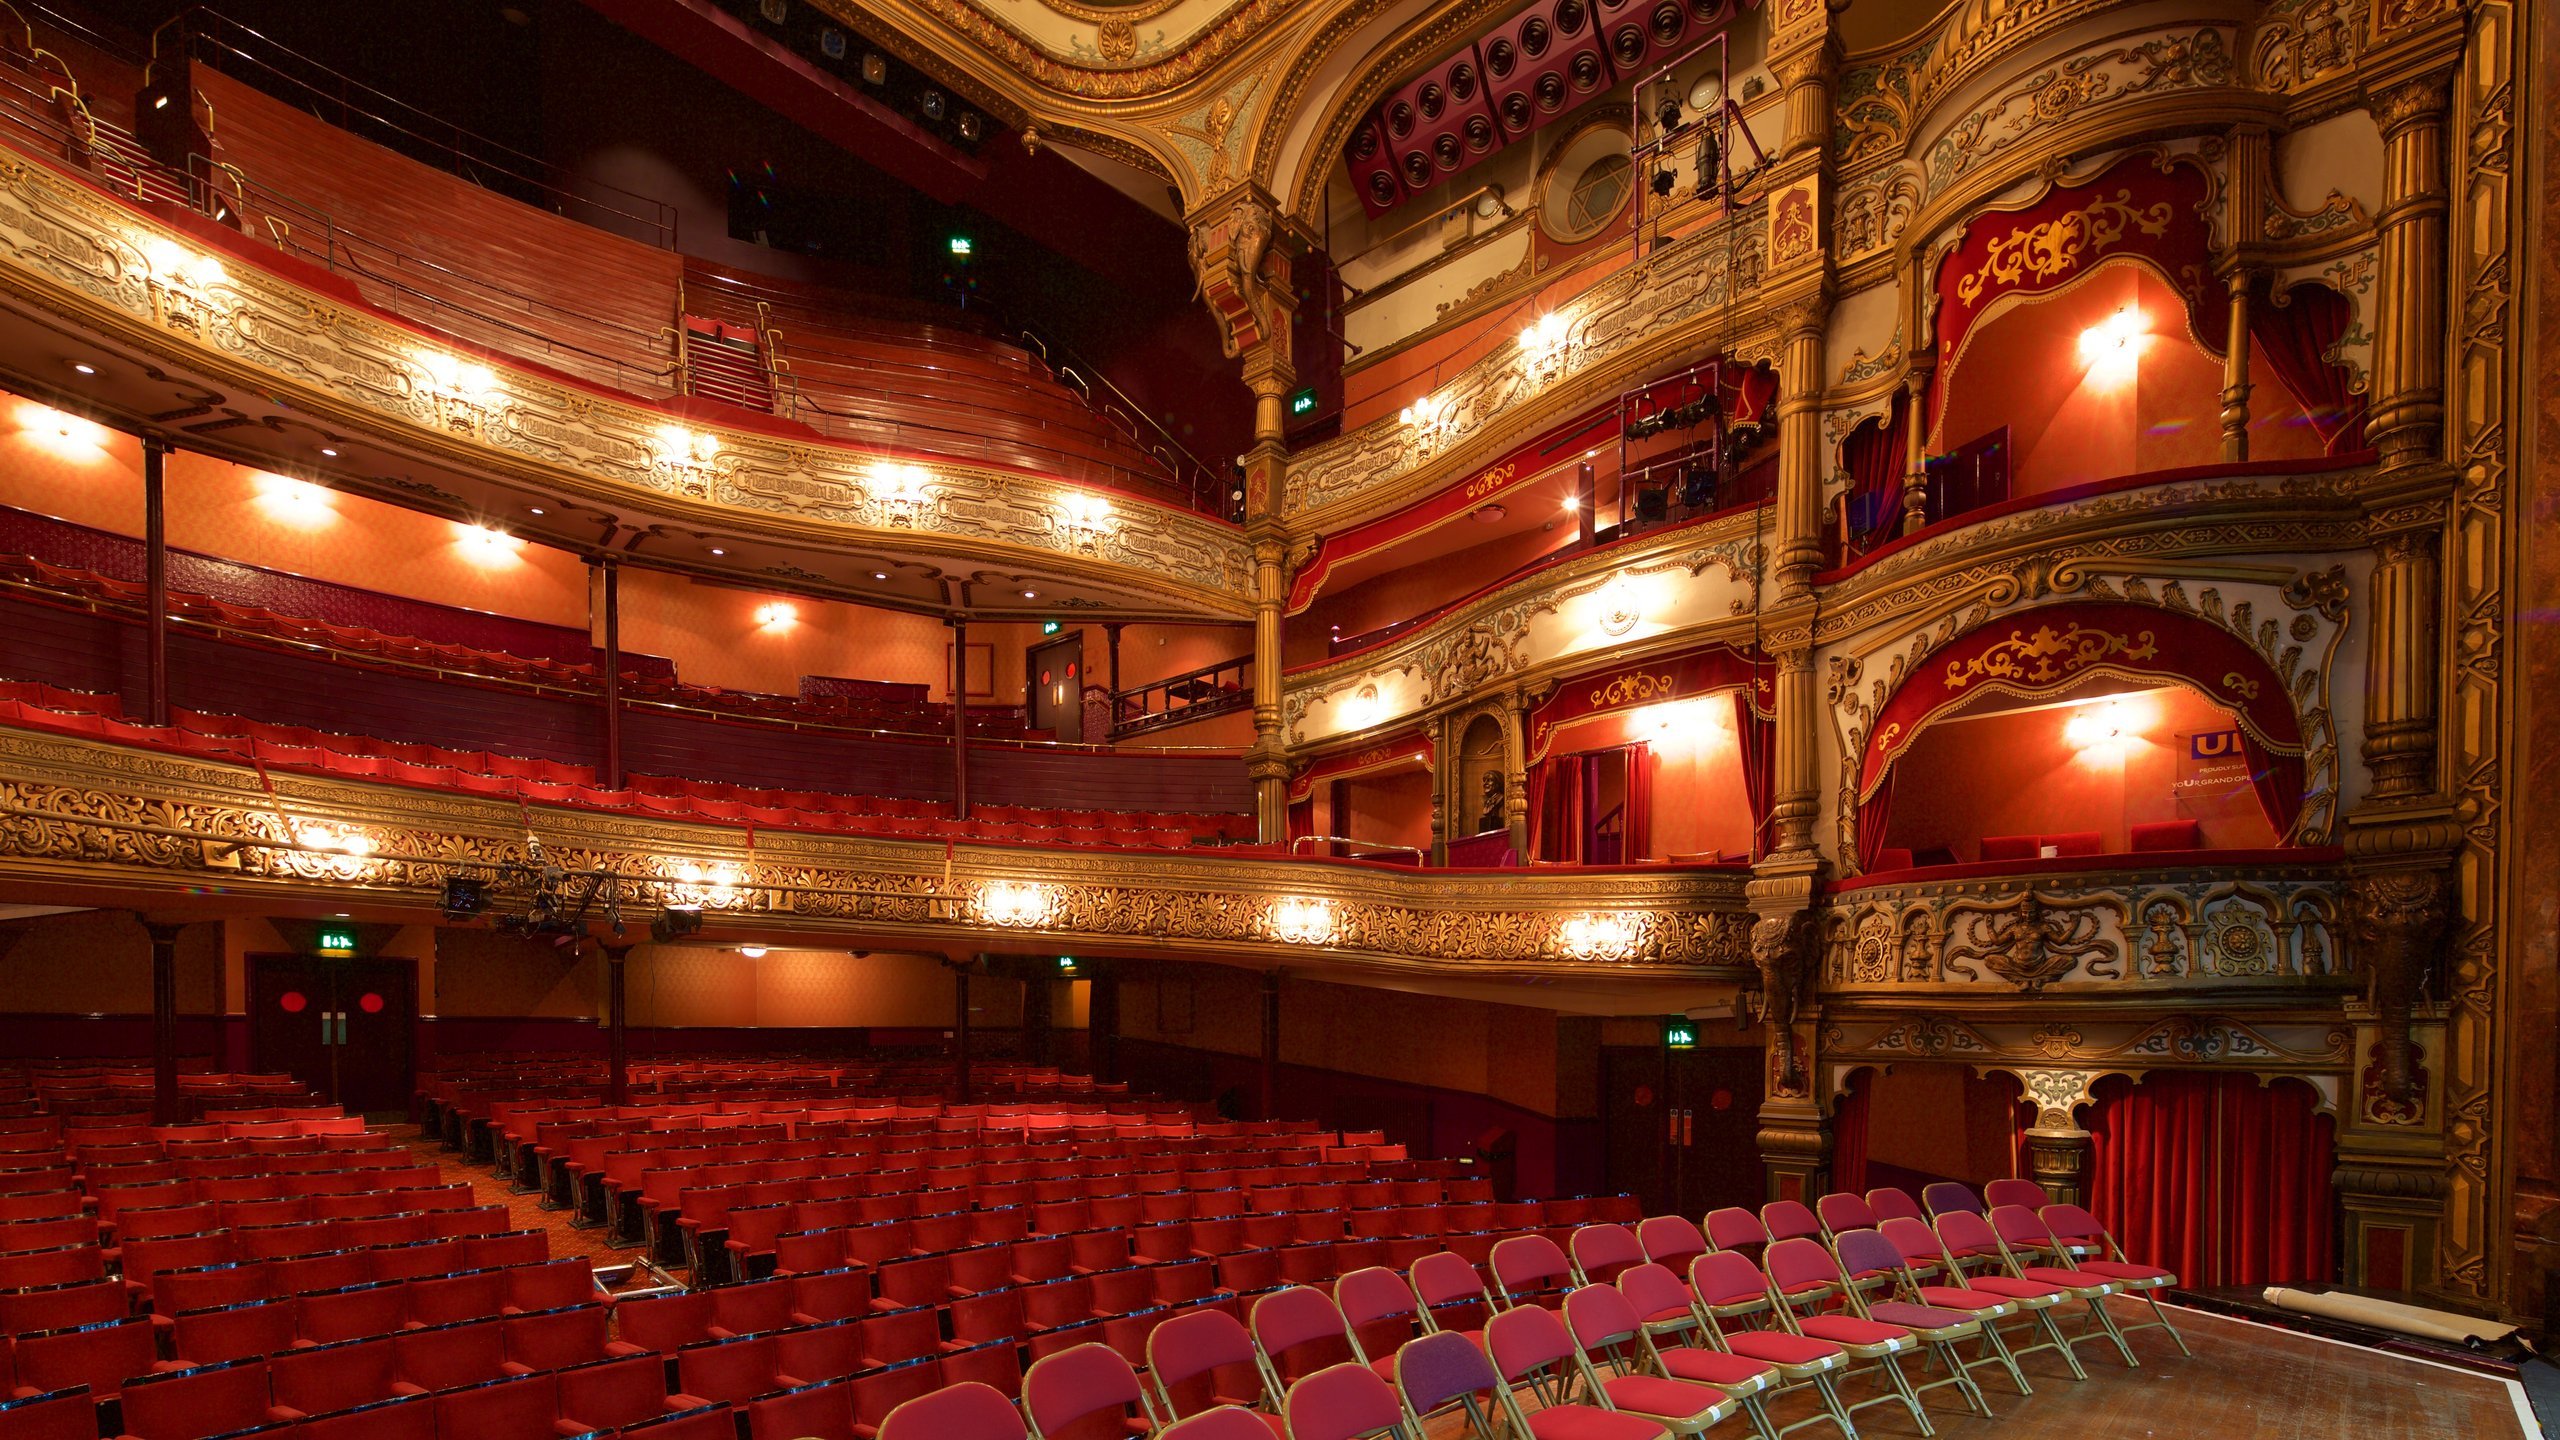 Theatre 4 9. Большой оперный театр Белфаст. Гранд опера Хаус Белфаст. Северная Ирландия оперный театр. Великий оперный театр Северной Ирландии.